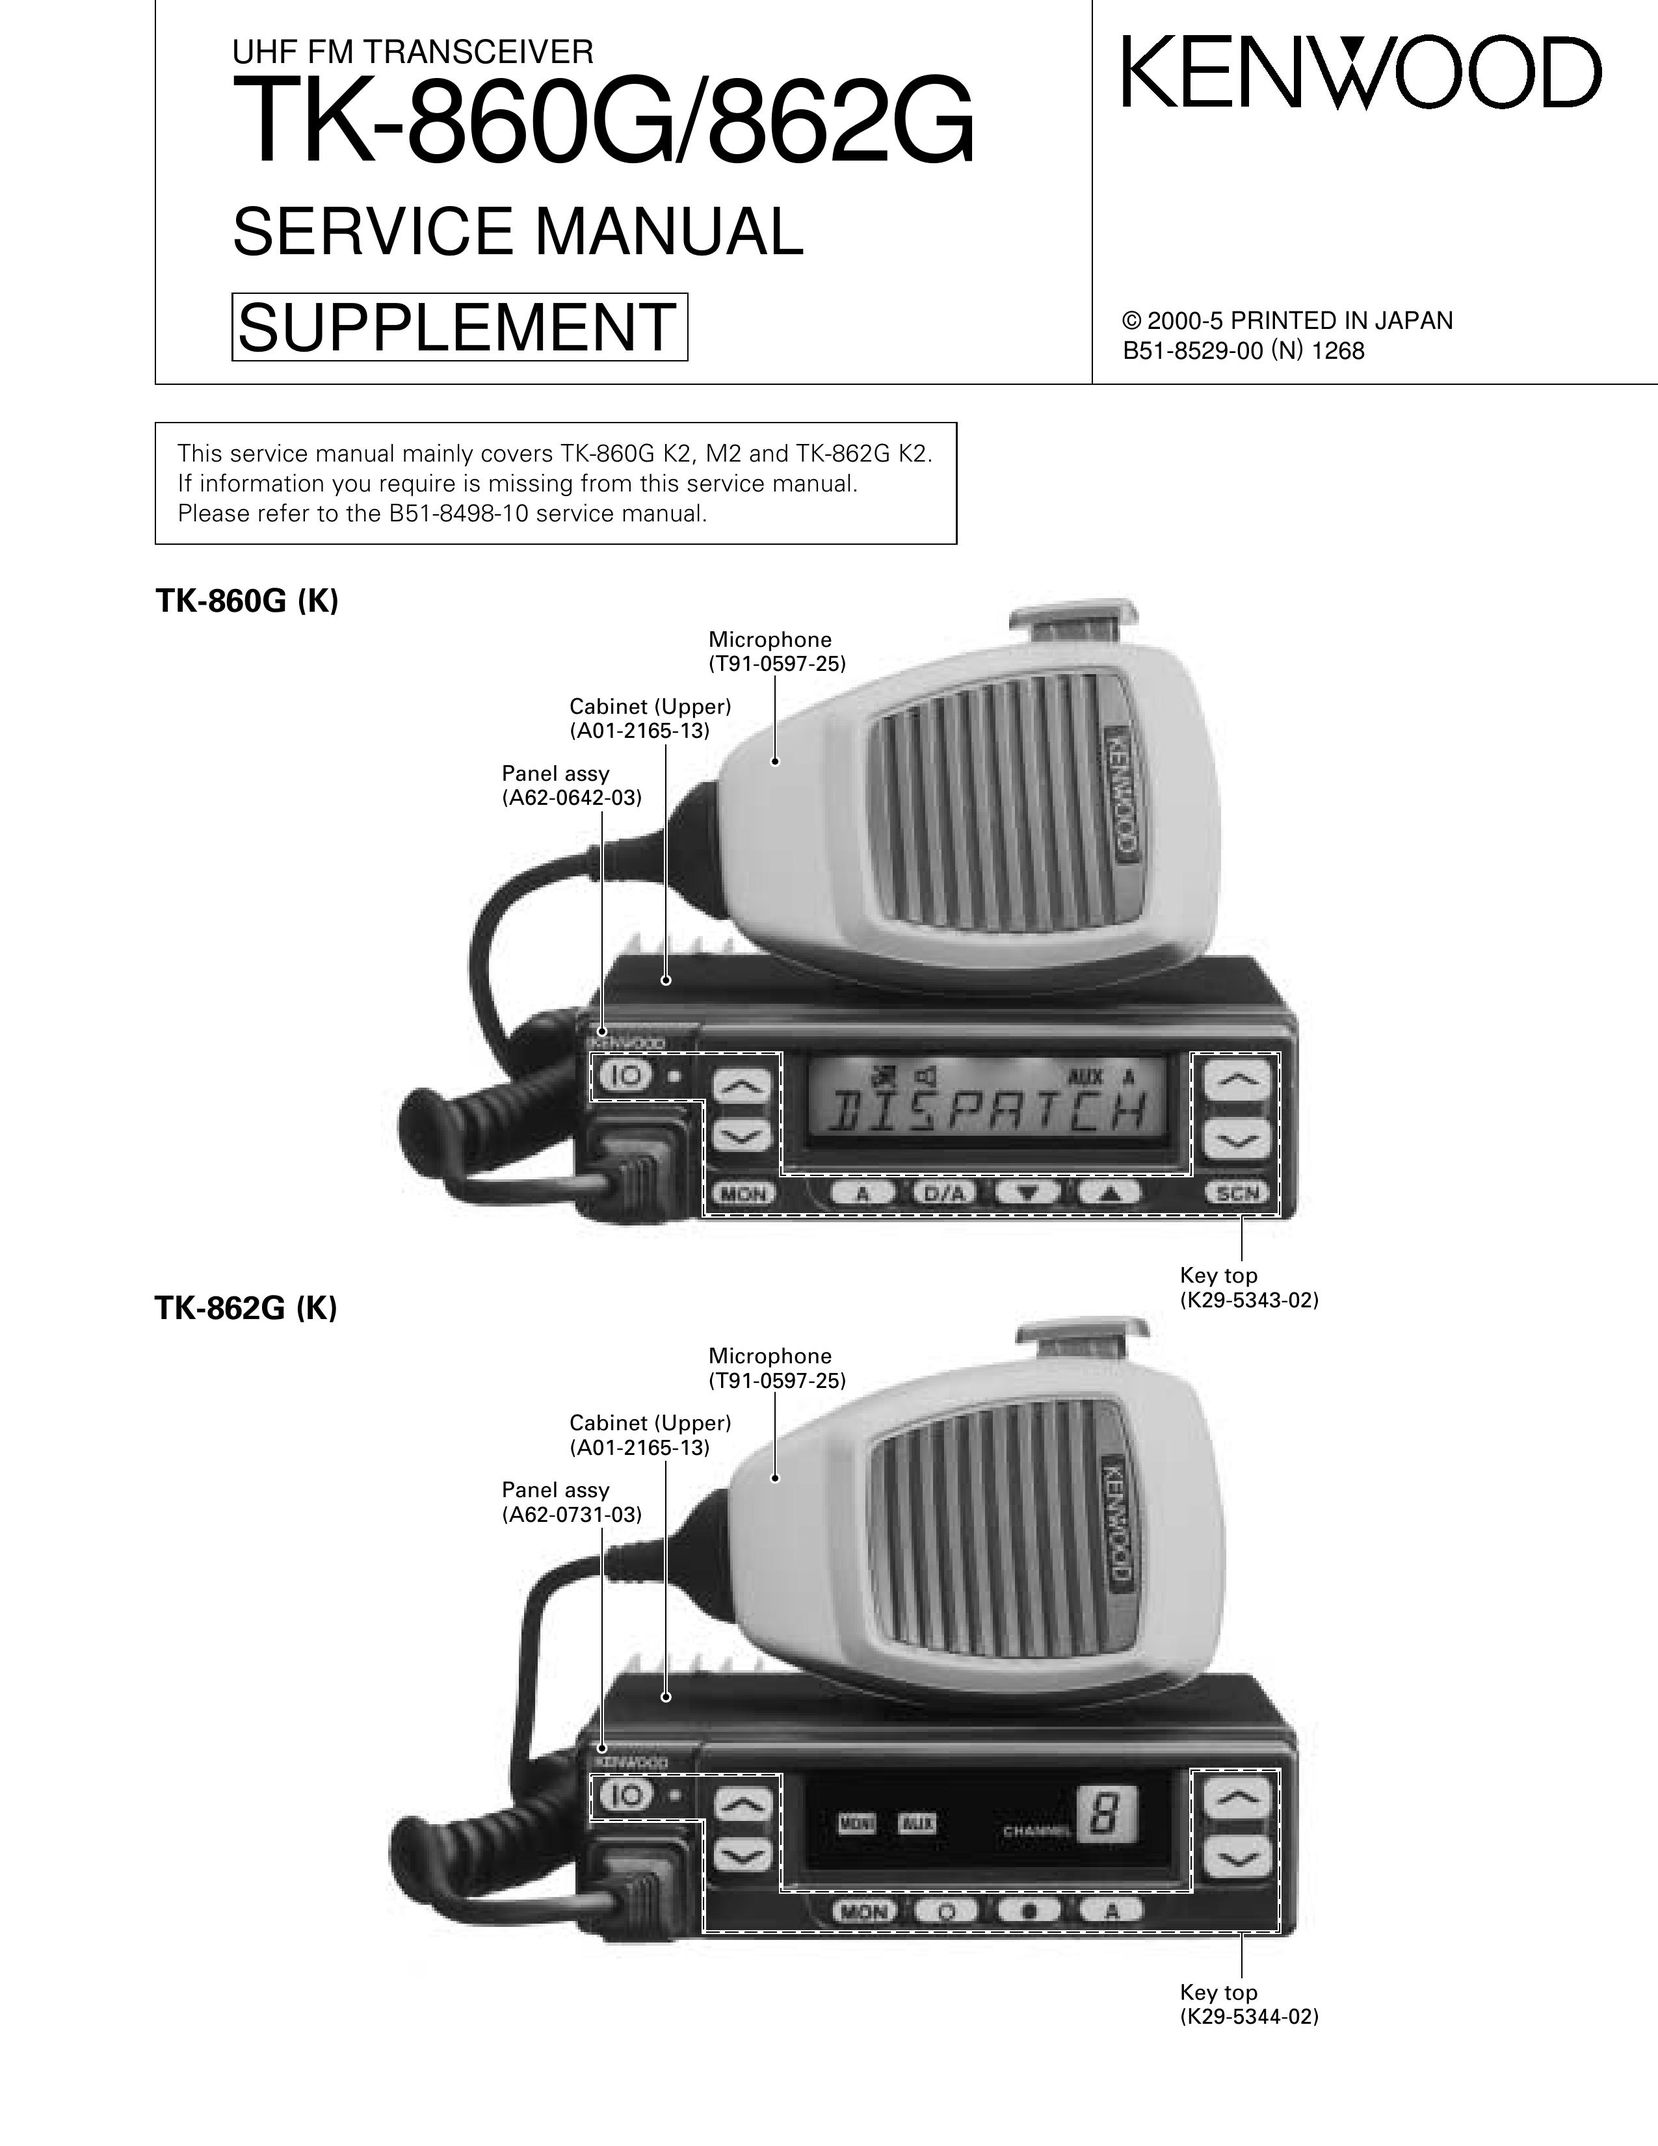 Kenwood TK-862G Portable Radio User Manual